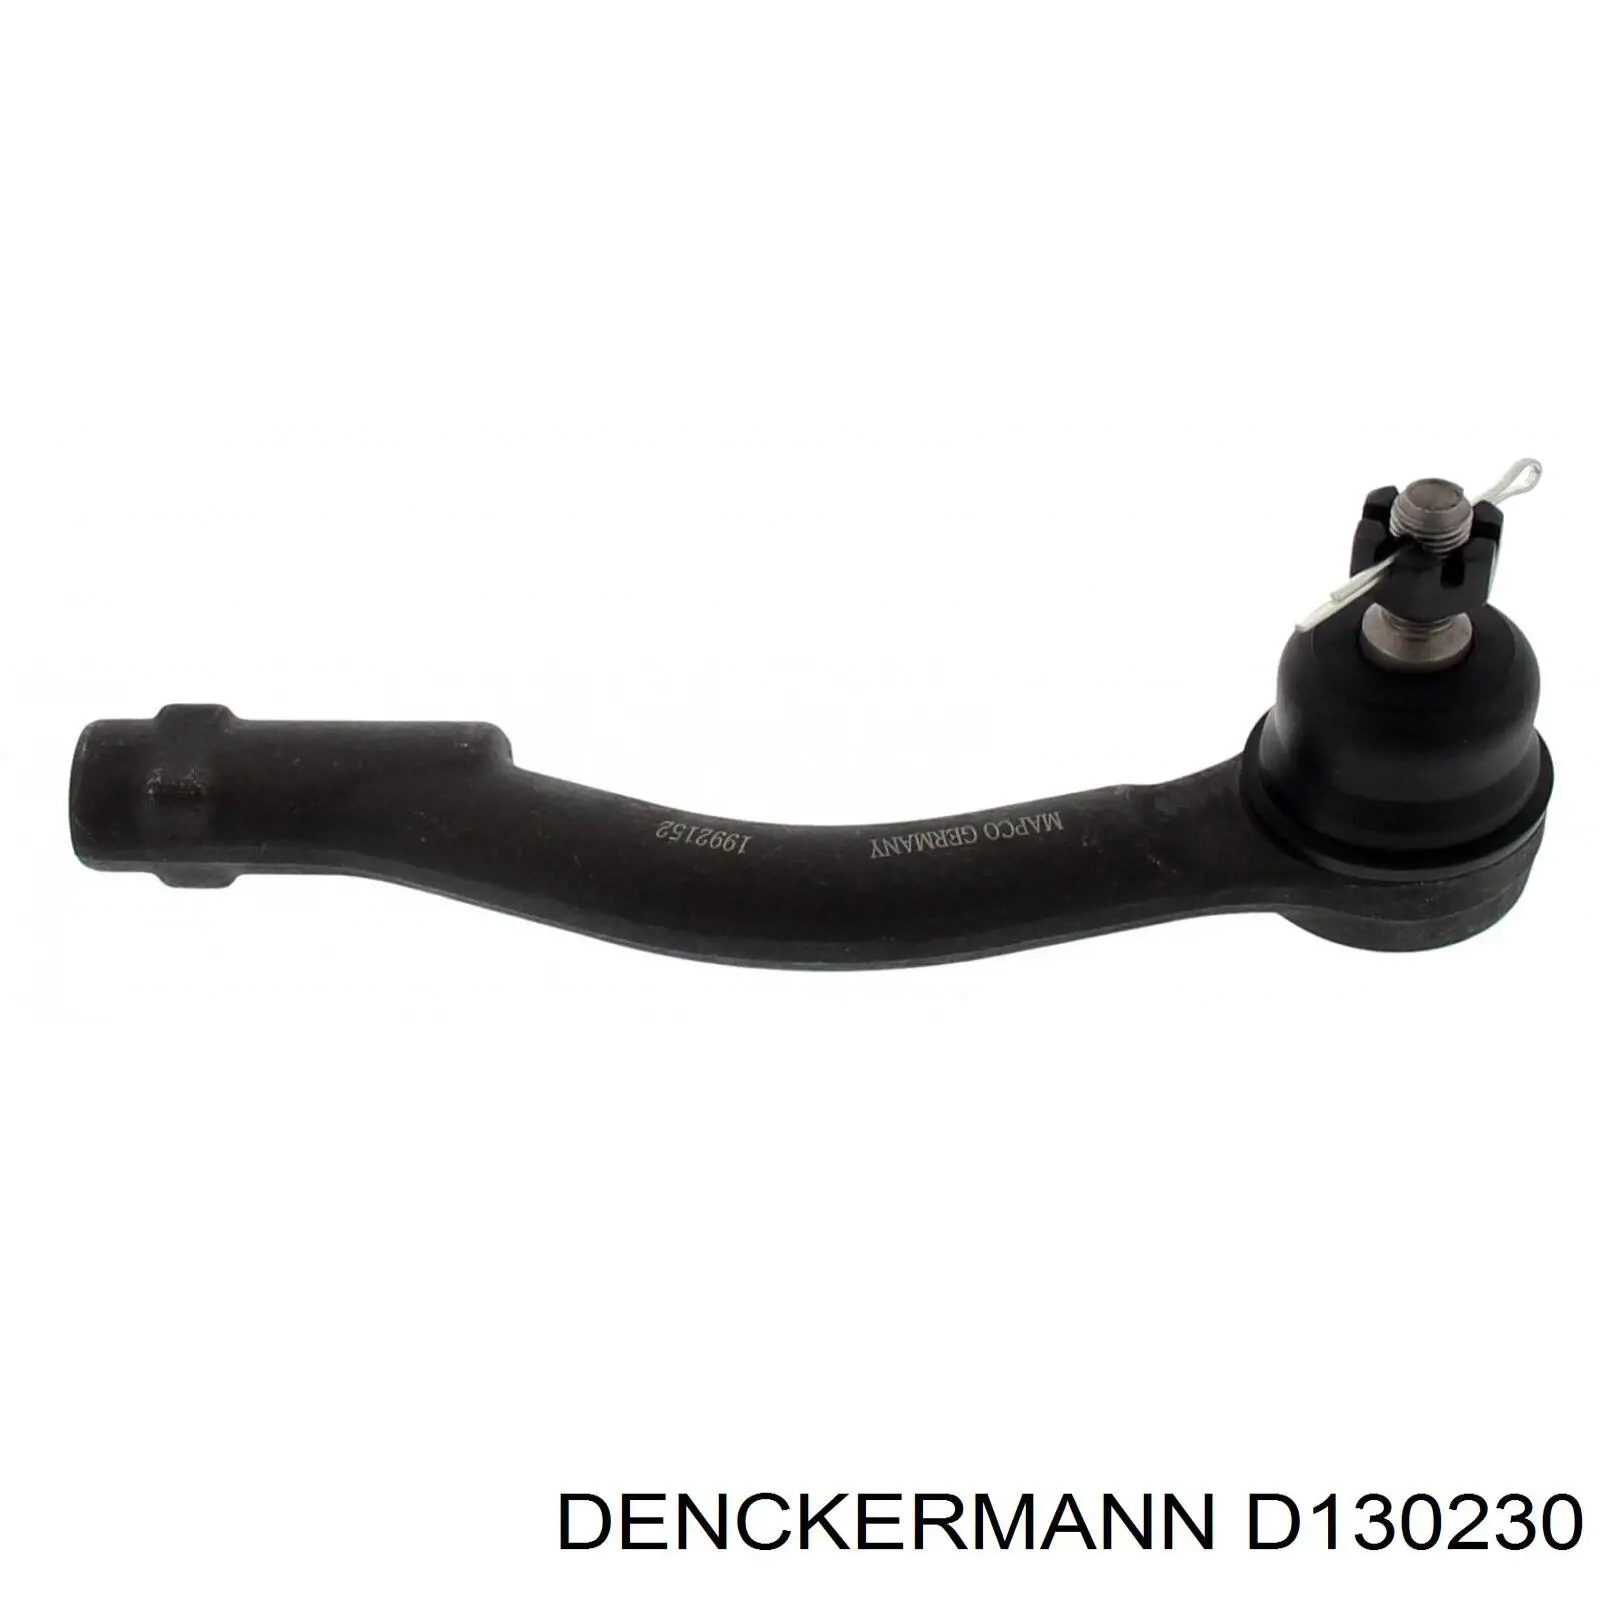 D130230 Denckermann rótula barra de acoplamiento exterior